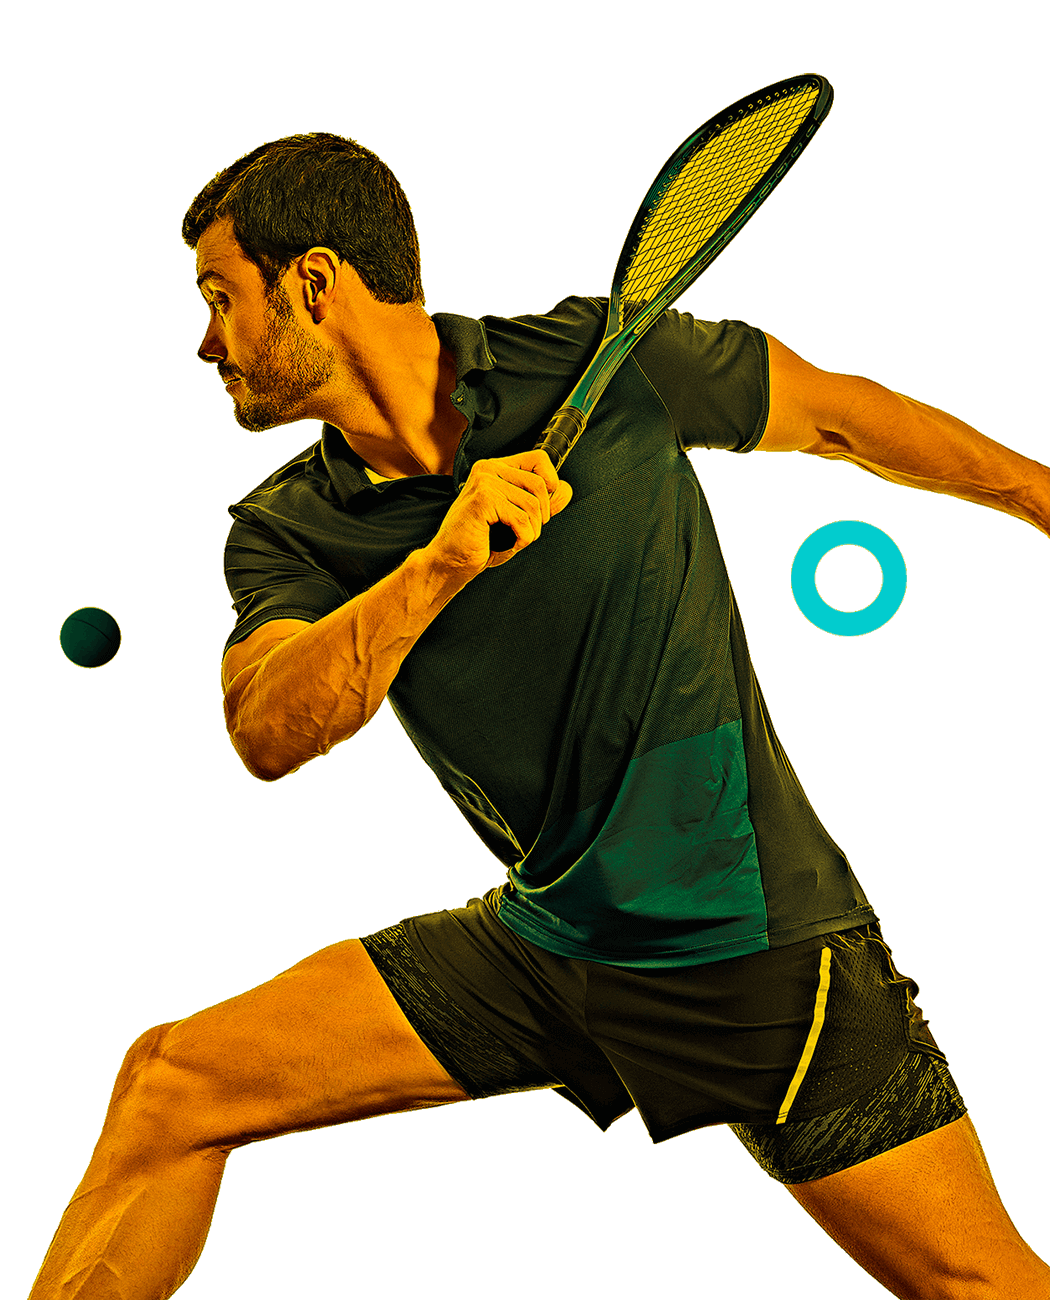 En la foto, un jugador de squash a punto de golpear la pelota.